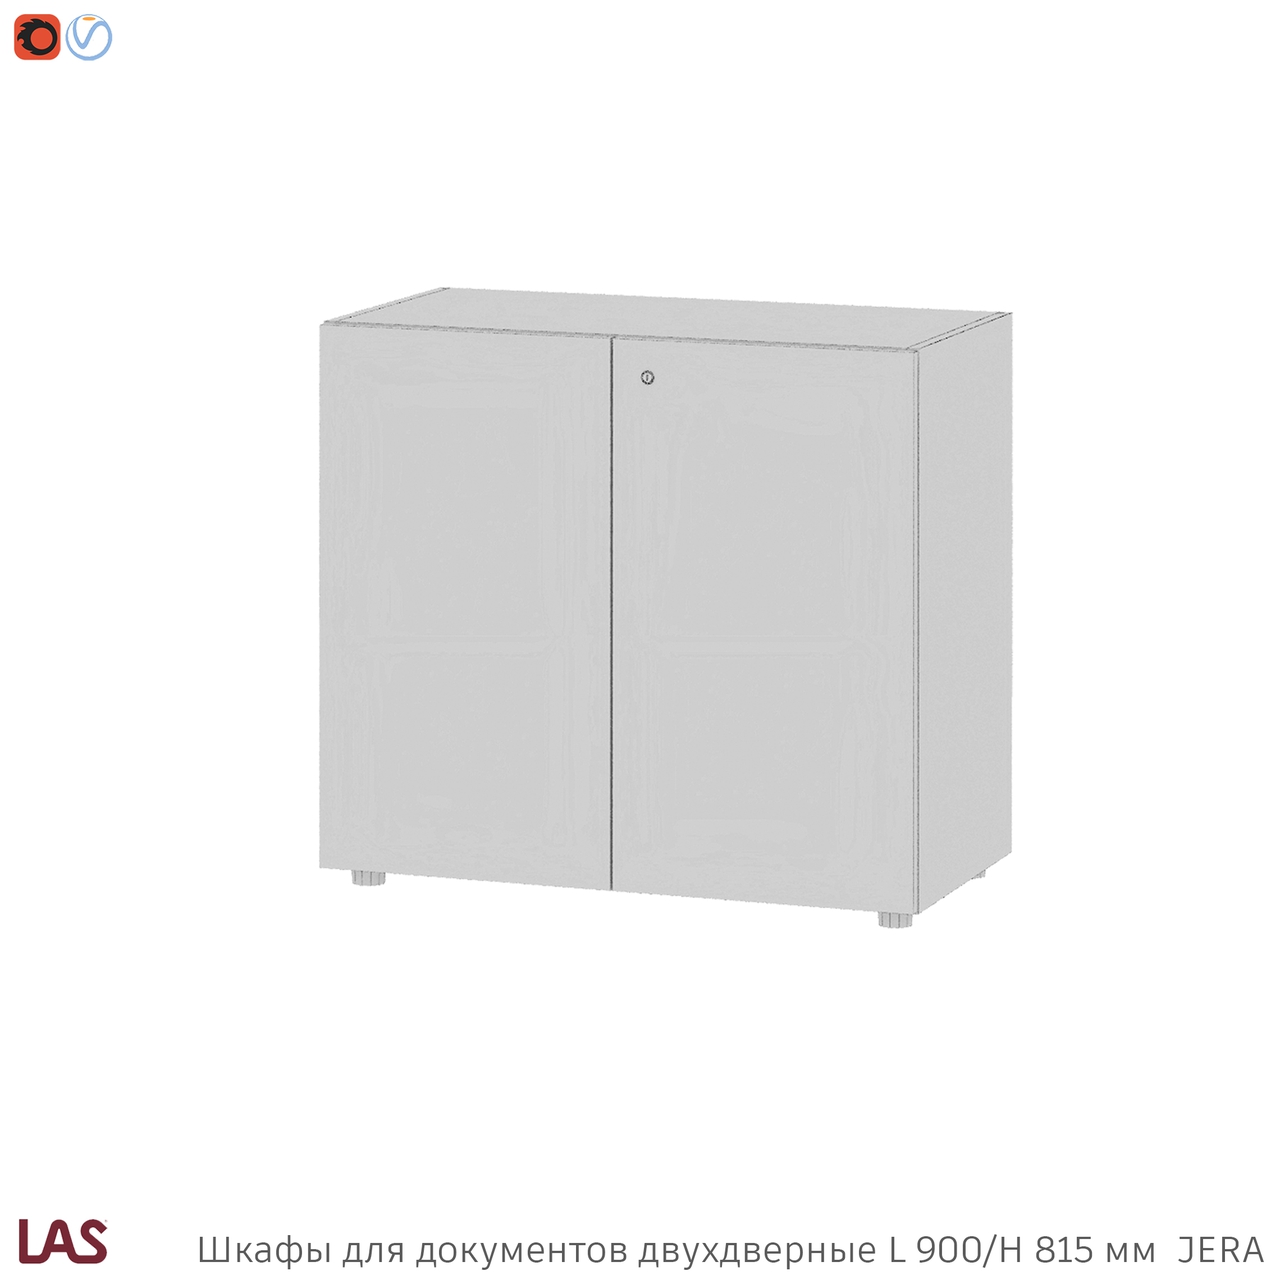 Превью G 3D-модели офисных шкафов LAS Jera 159987